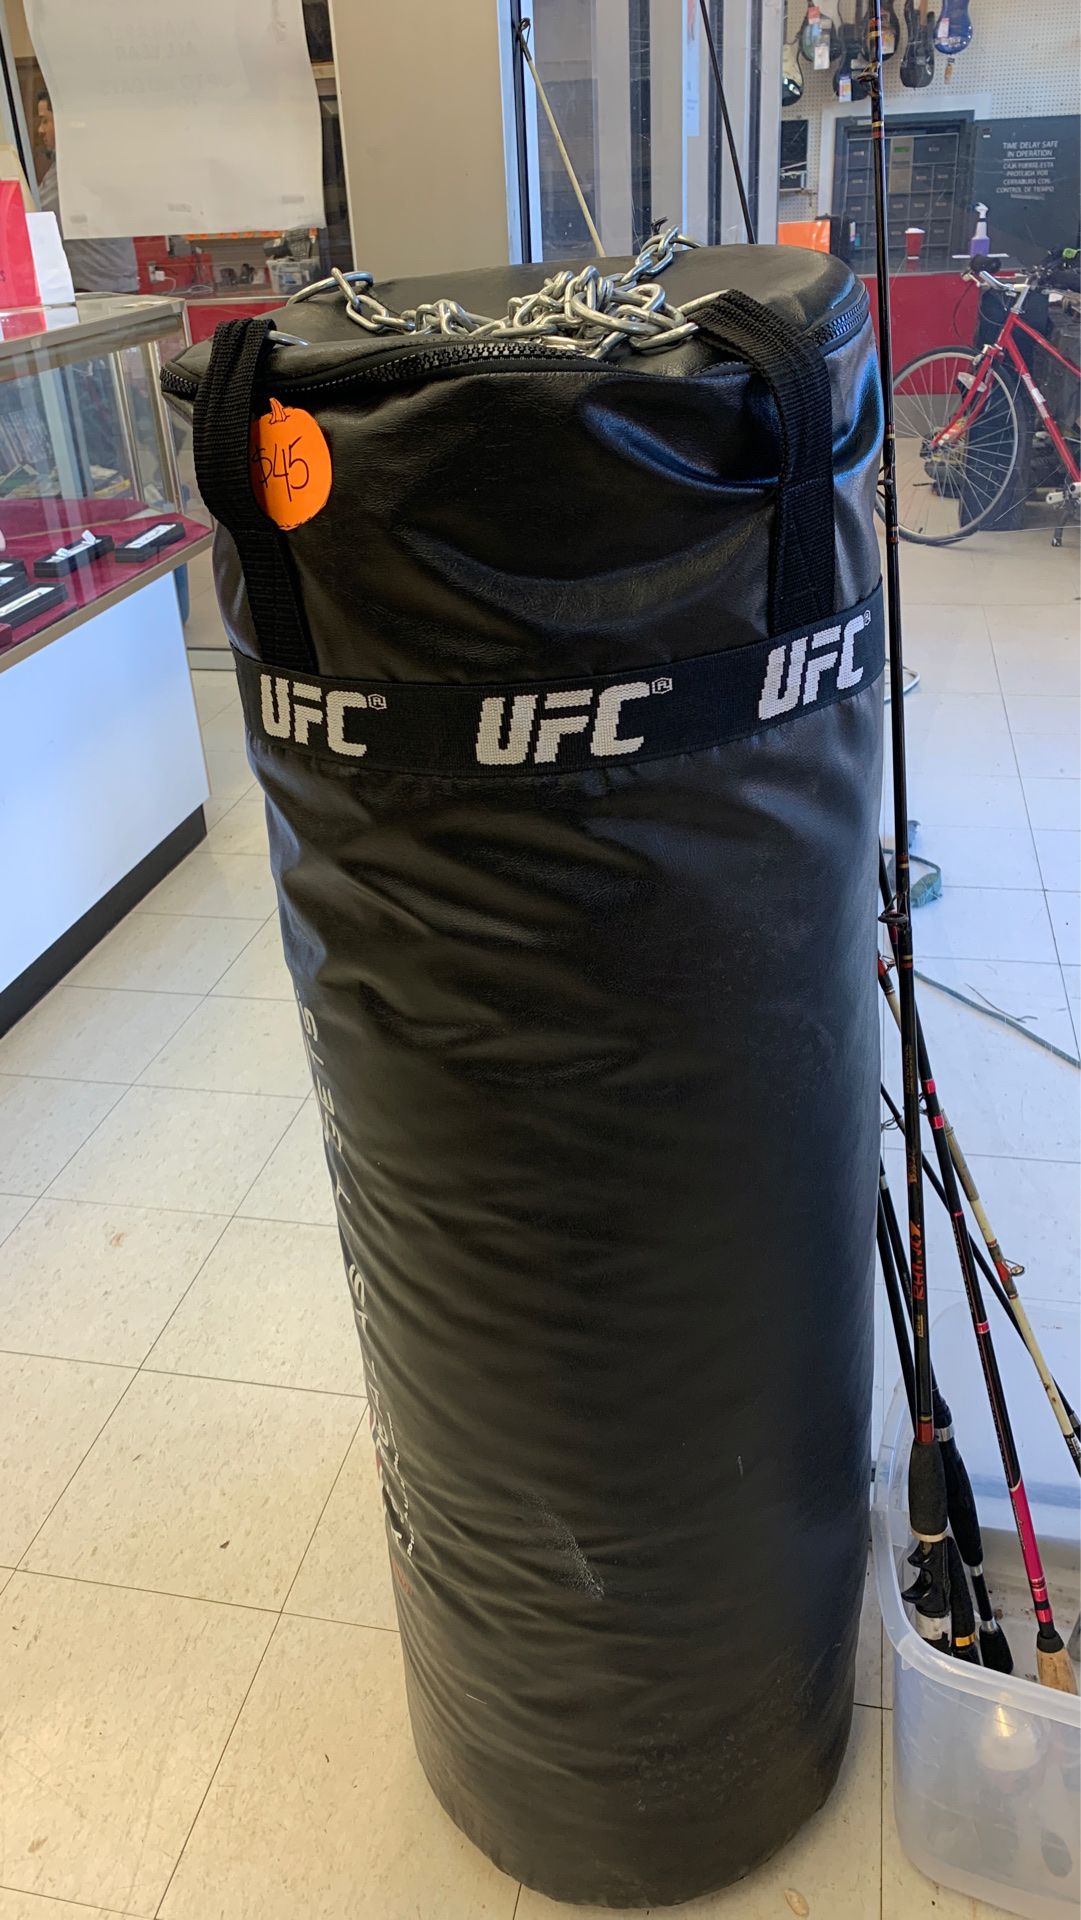 UFC punching bag